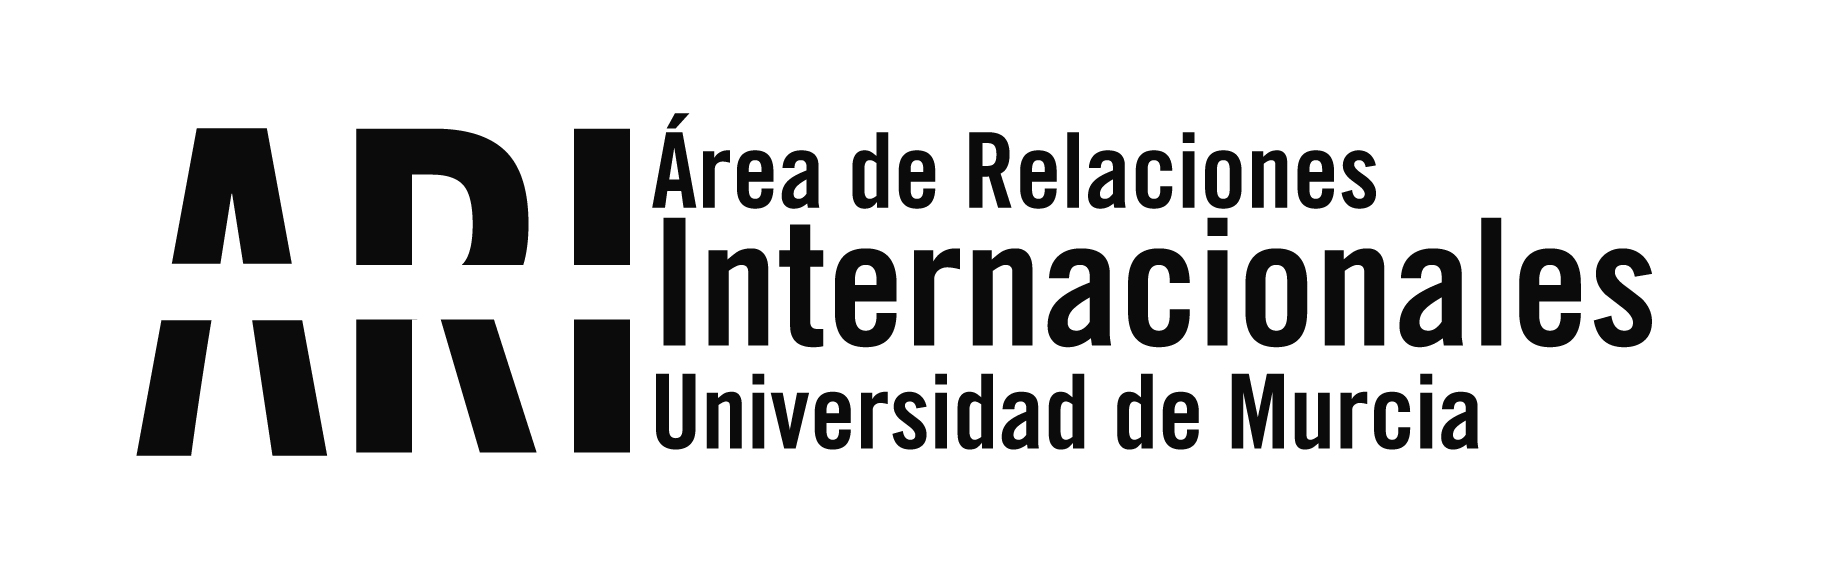 La Universidad de Murcia recibe la visita del rector de la Universidad de Santo Tomás - Sede Medellín (Colombia) - Área de Relaciones Internacionales